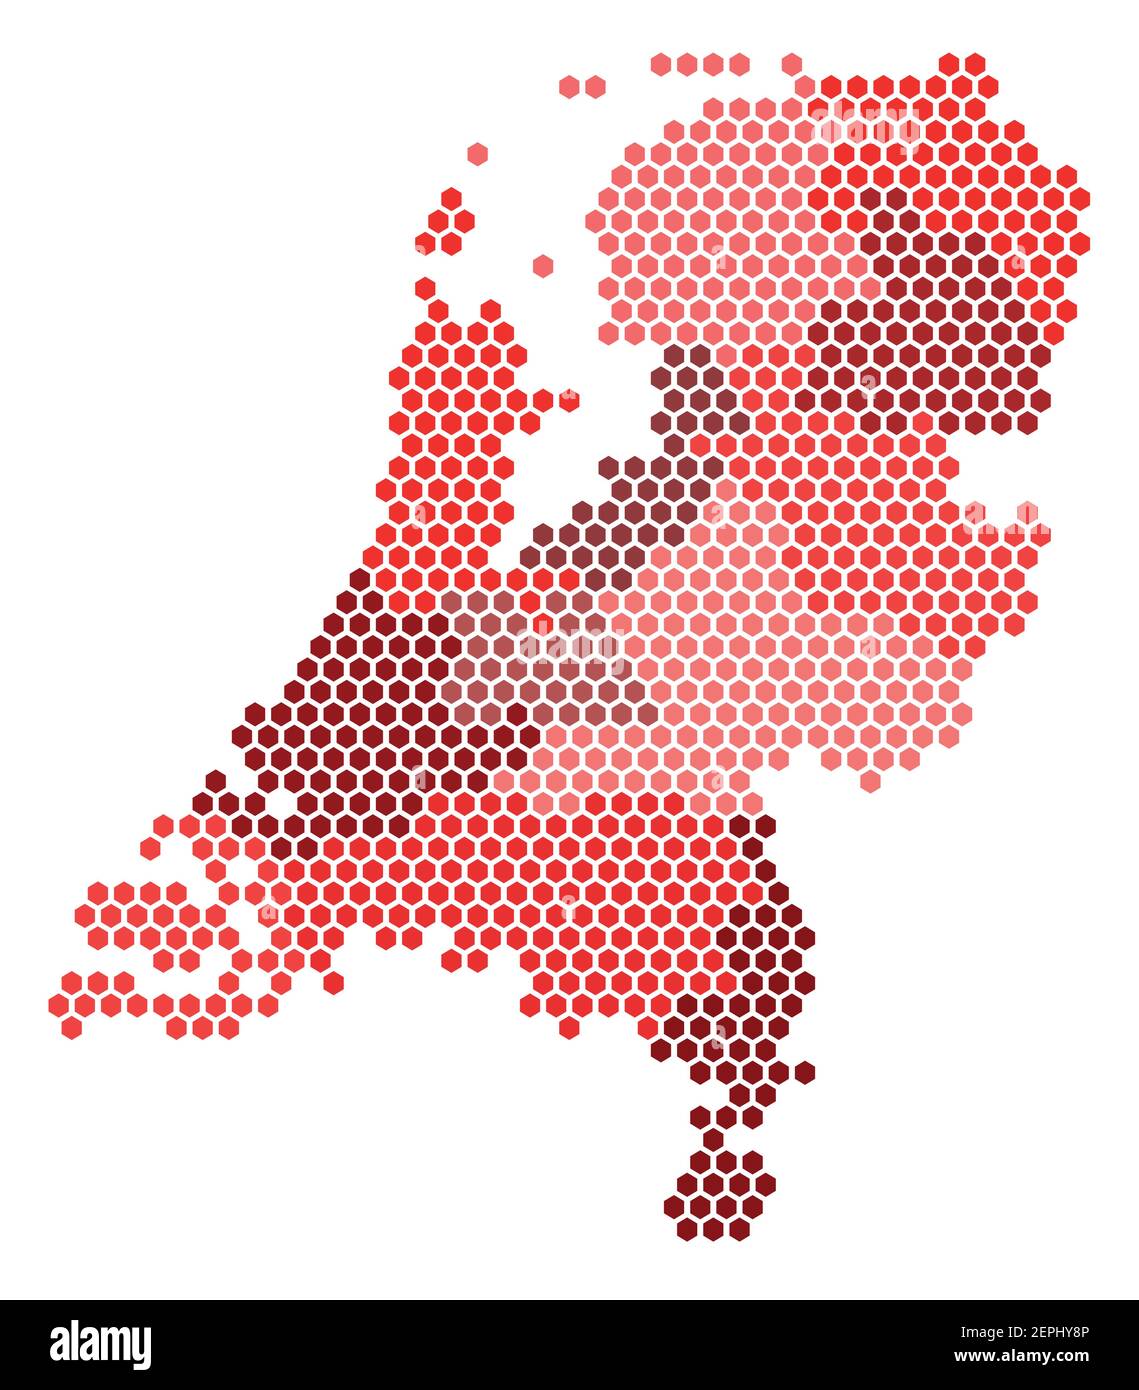 Carte vectorielle de pixels hexagonaux des régions et zones administratives des pays-Bas en rouge Illustration de Vecteur